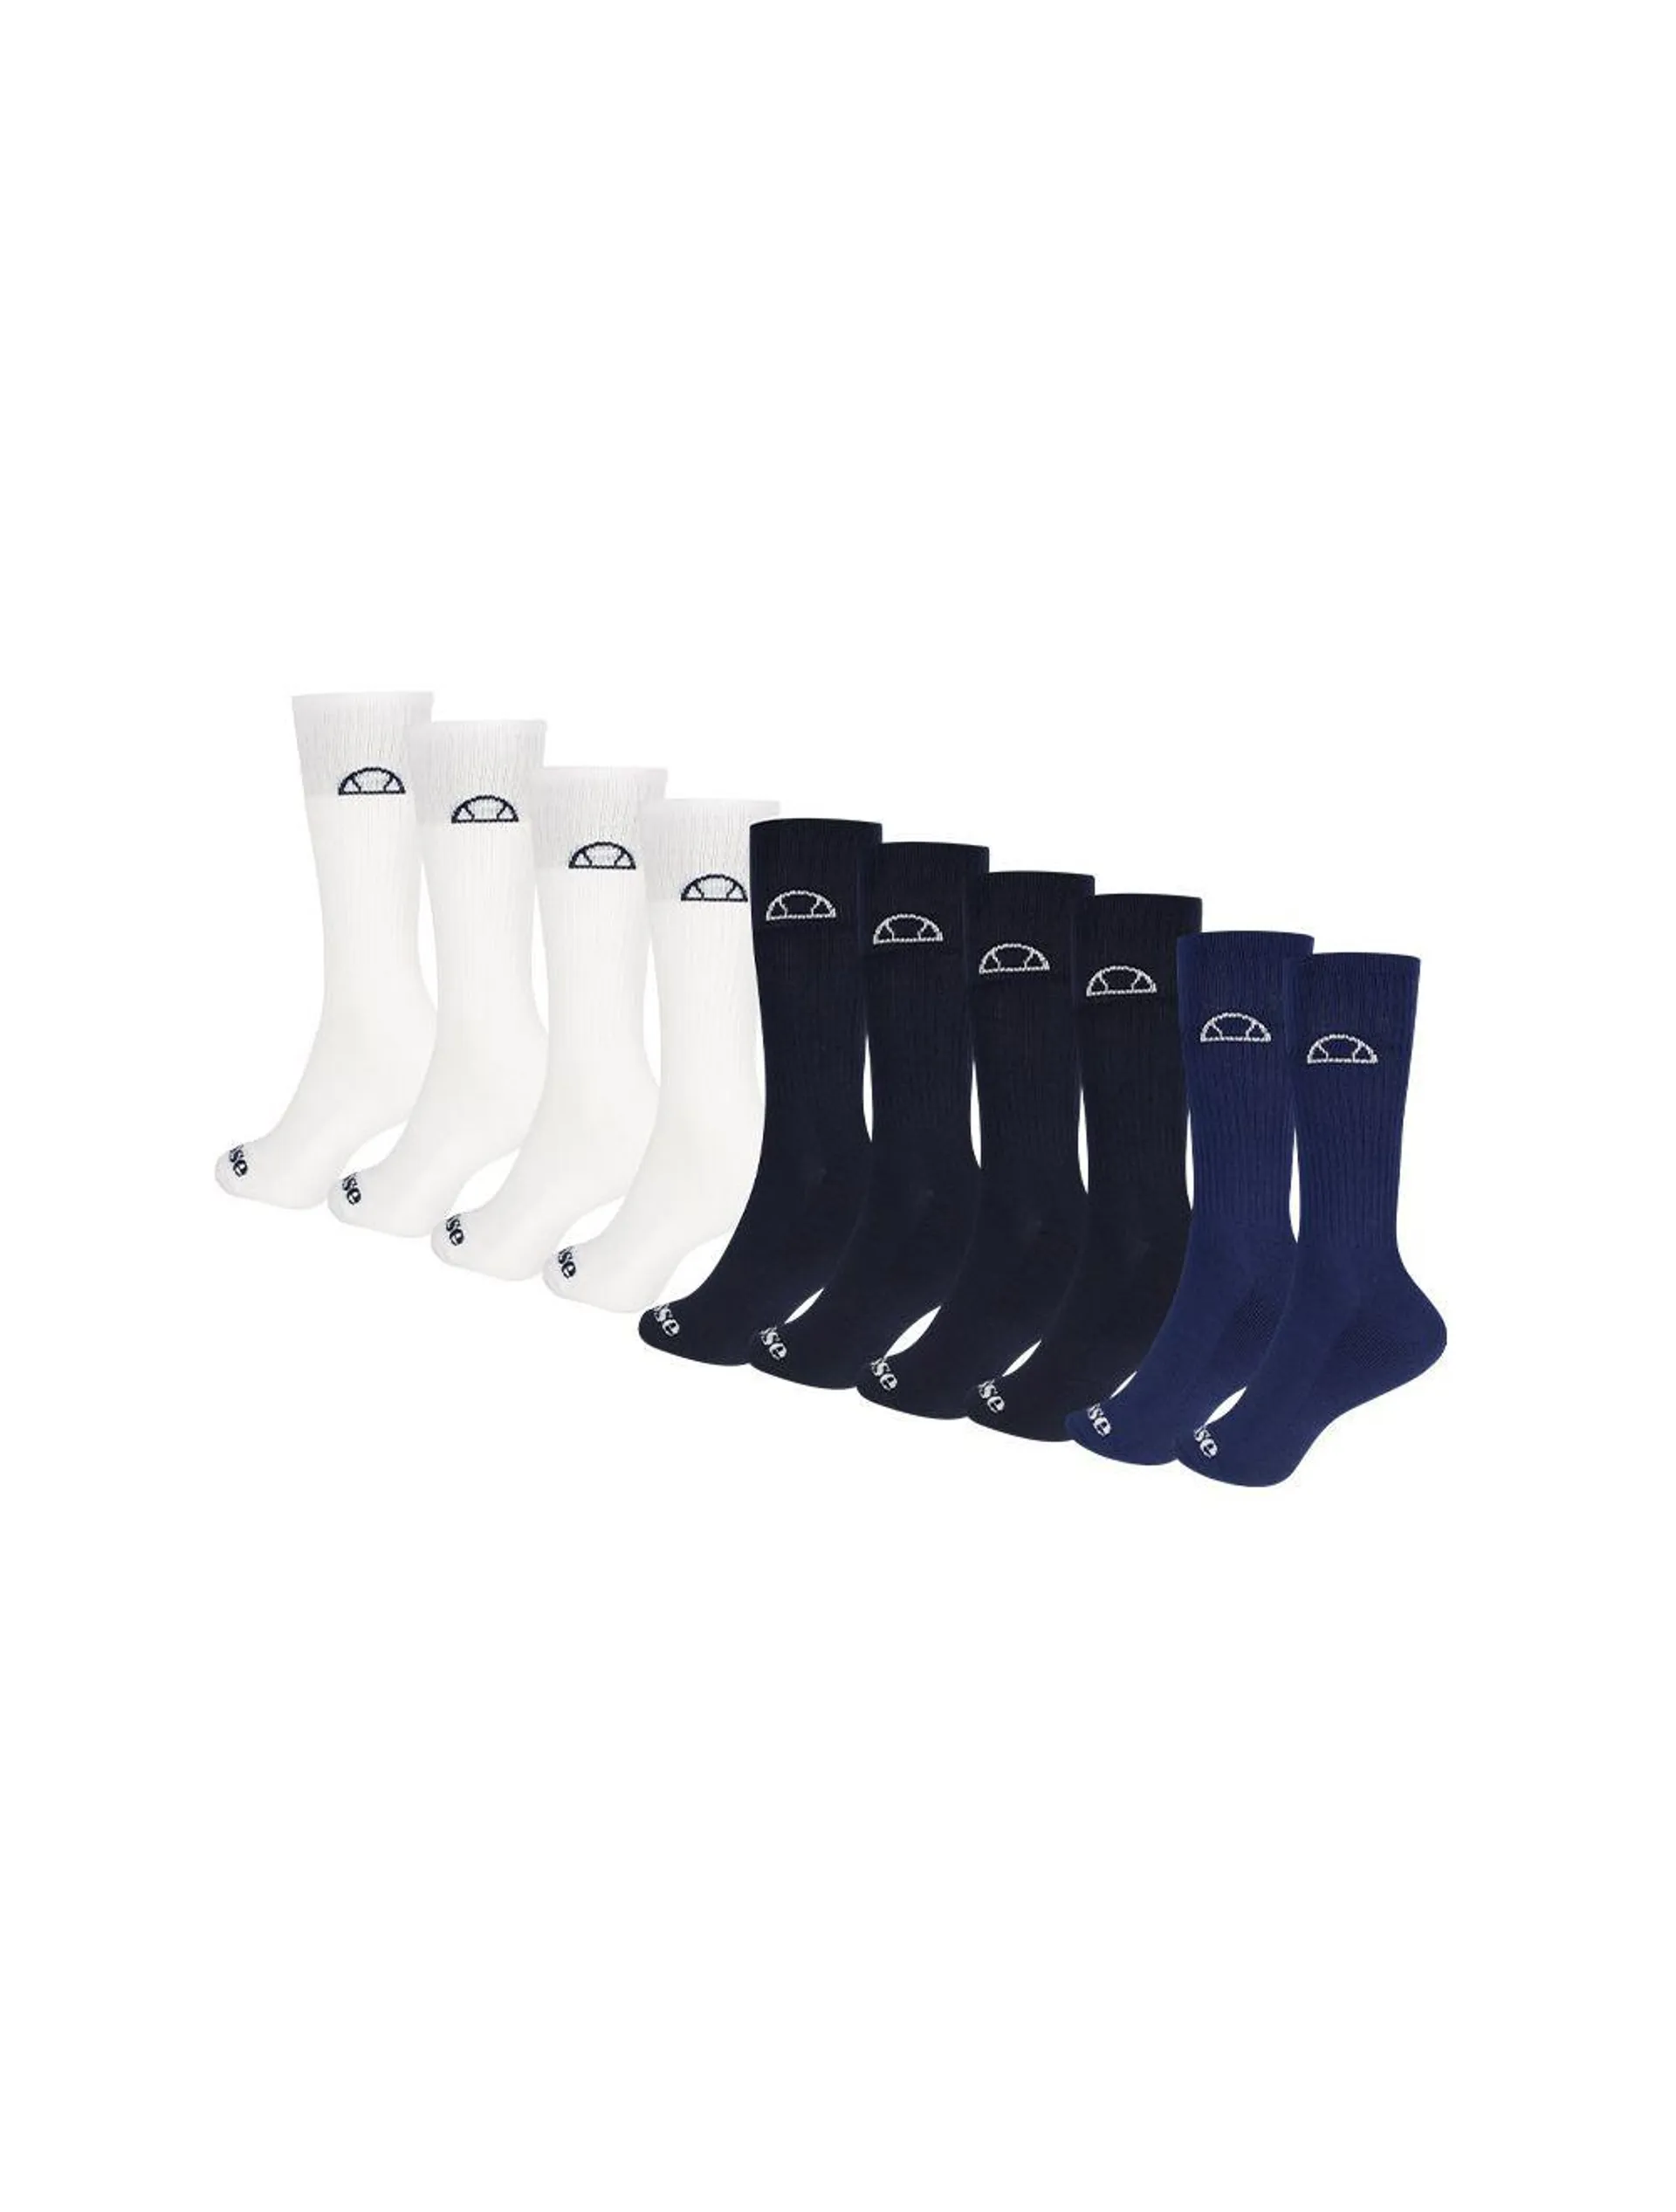 ellesse Crew Socks Solid Navy White 5 Pack